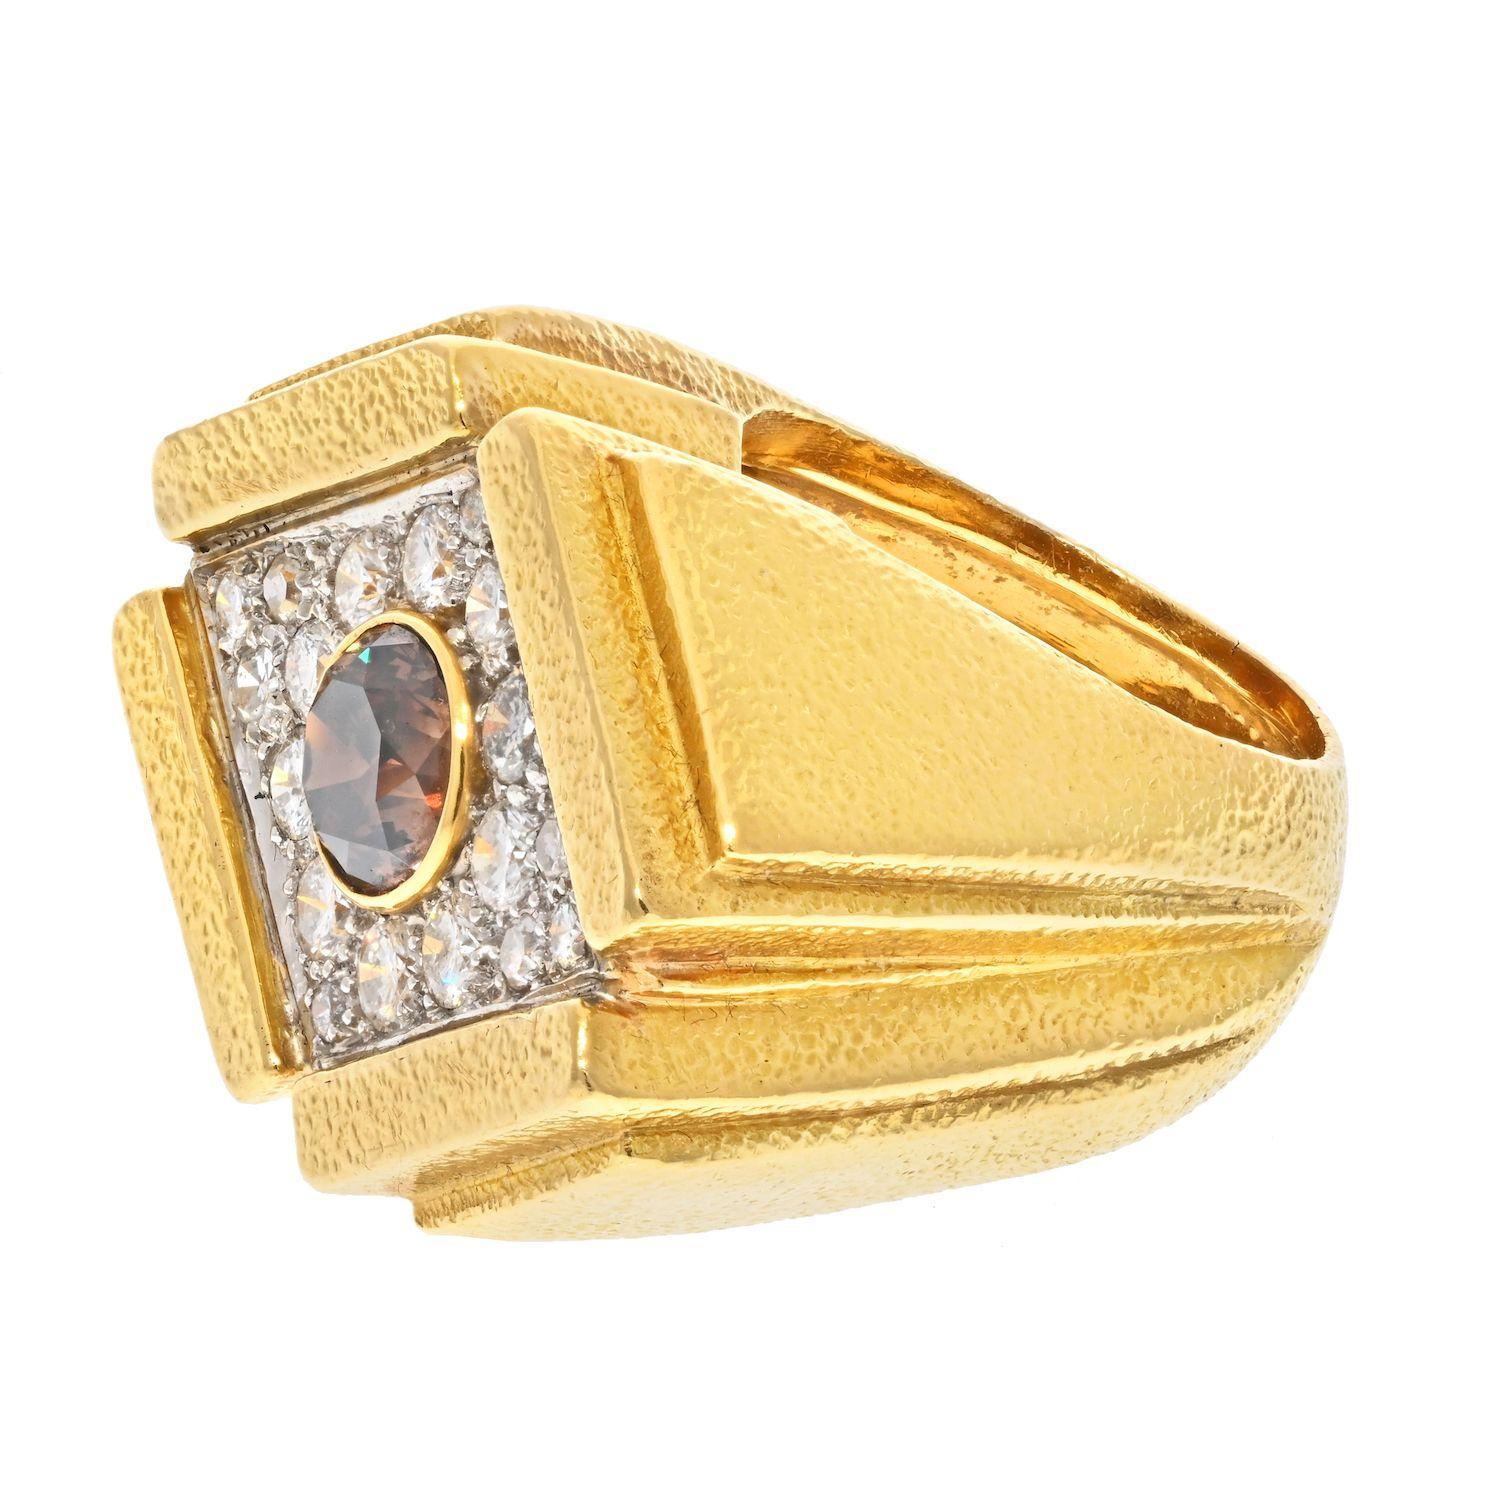 Dies ist ein moderner, übergroßer champagnerfarbener Diamantring von David Webb. Wie alle seine Ringe ist er aus massivem 18-karätigem Gold gefertigt, die Diamanten sind in Platin gefasst. Dieser Ring hat ein charakteristisches Finish auf der